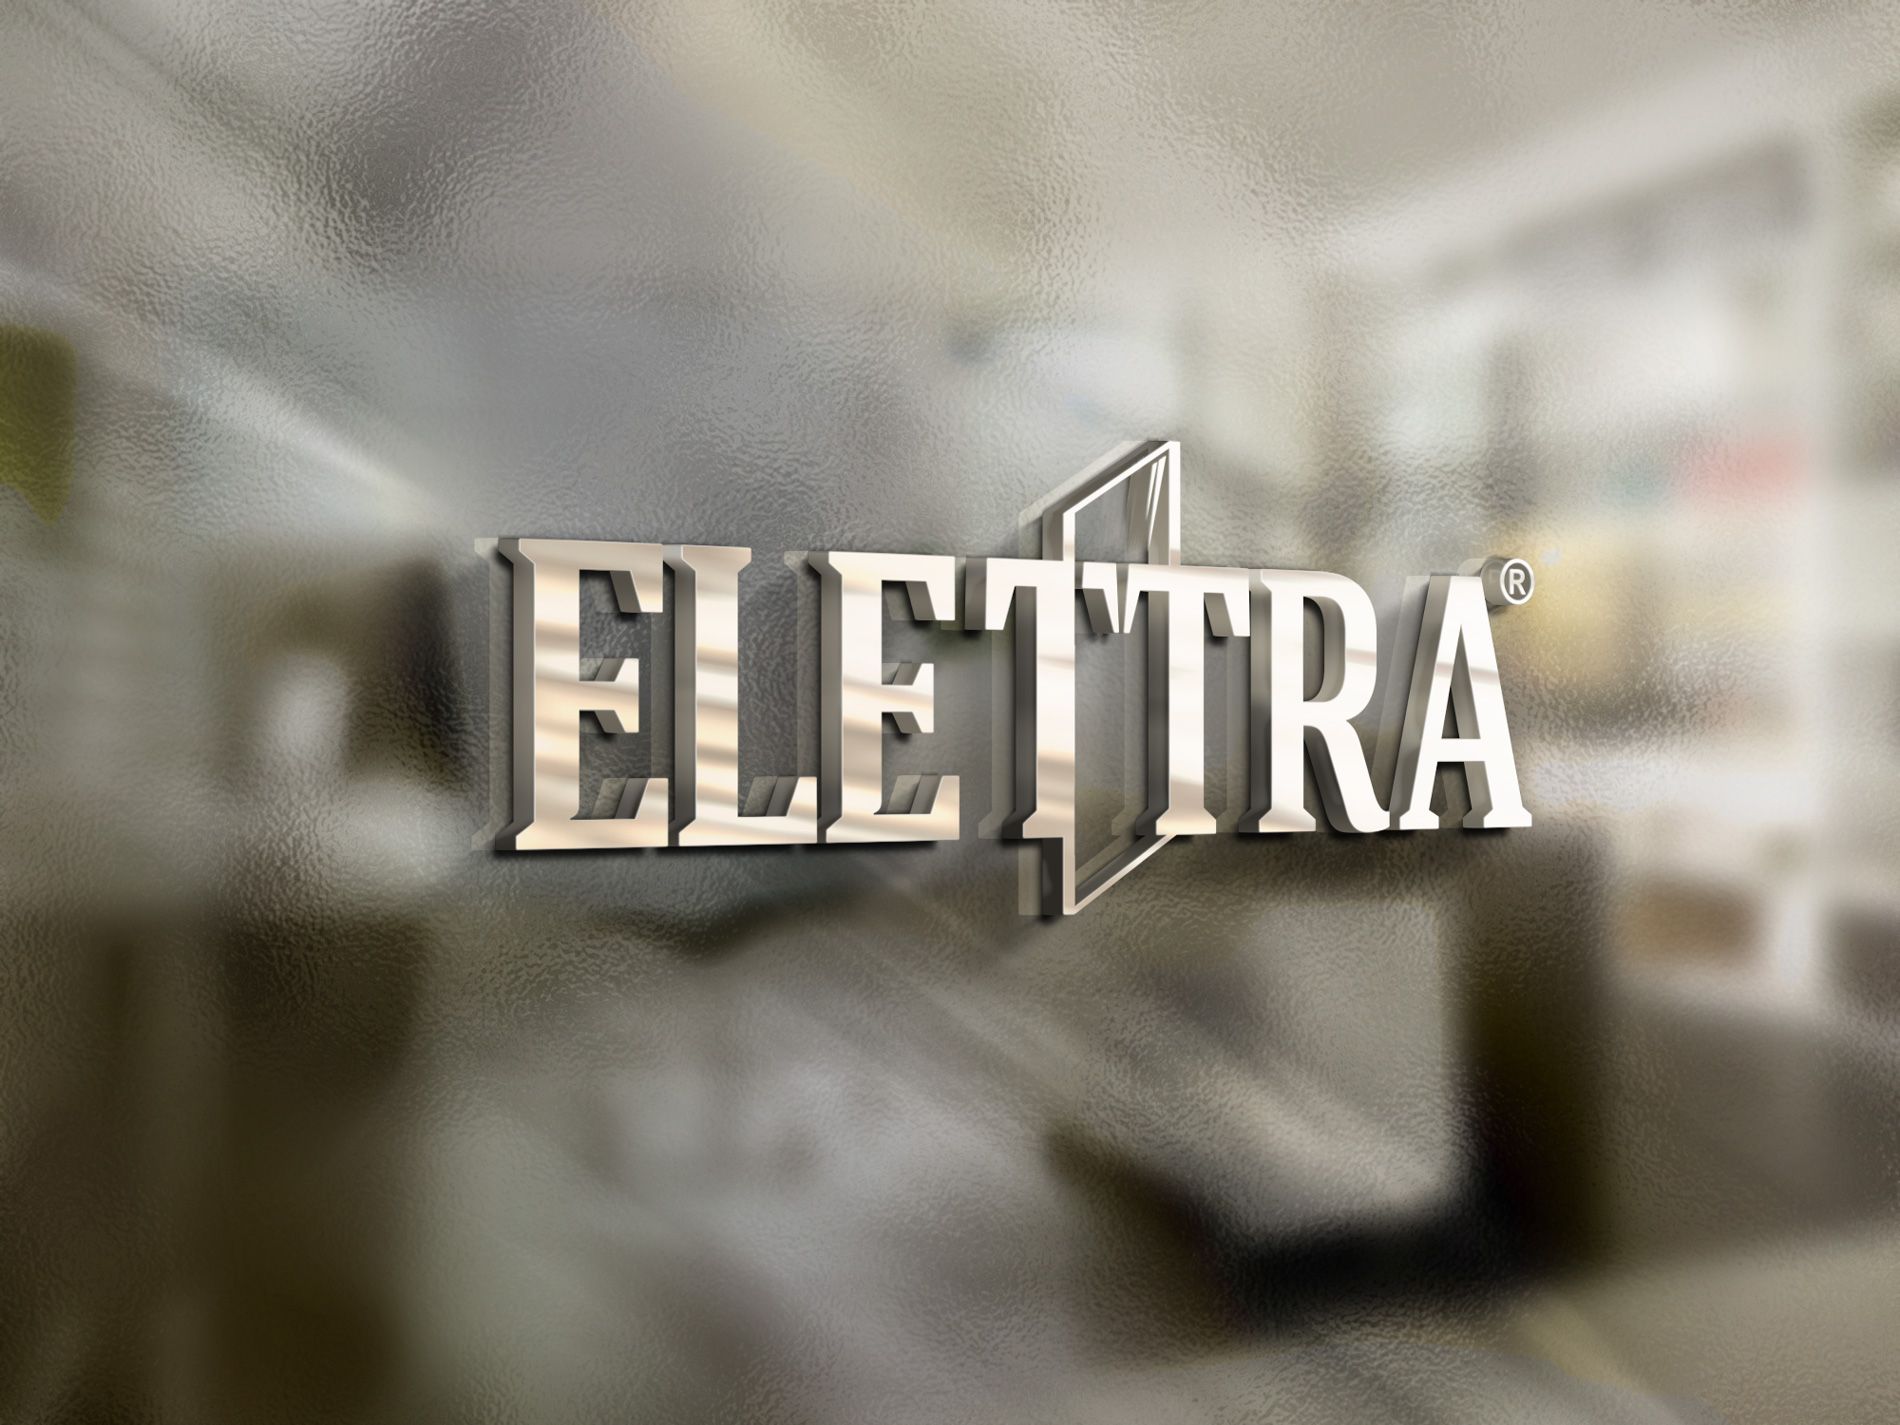 Логотип Elettra - стекольное производство - дизайнер kras-sky